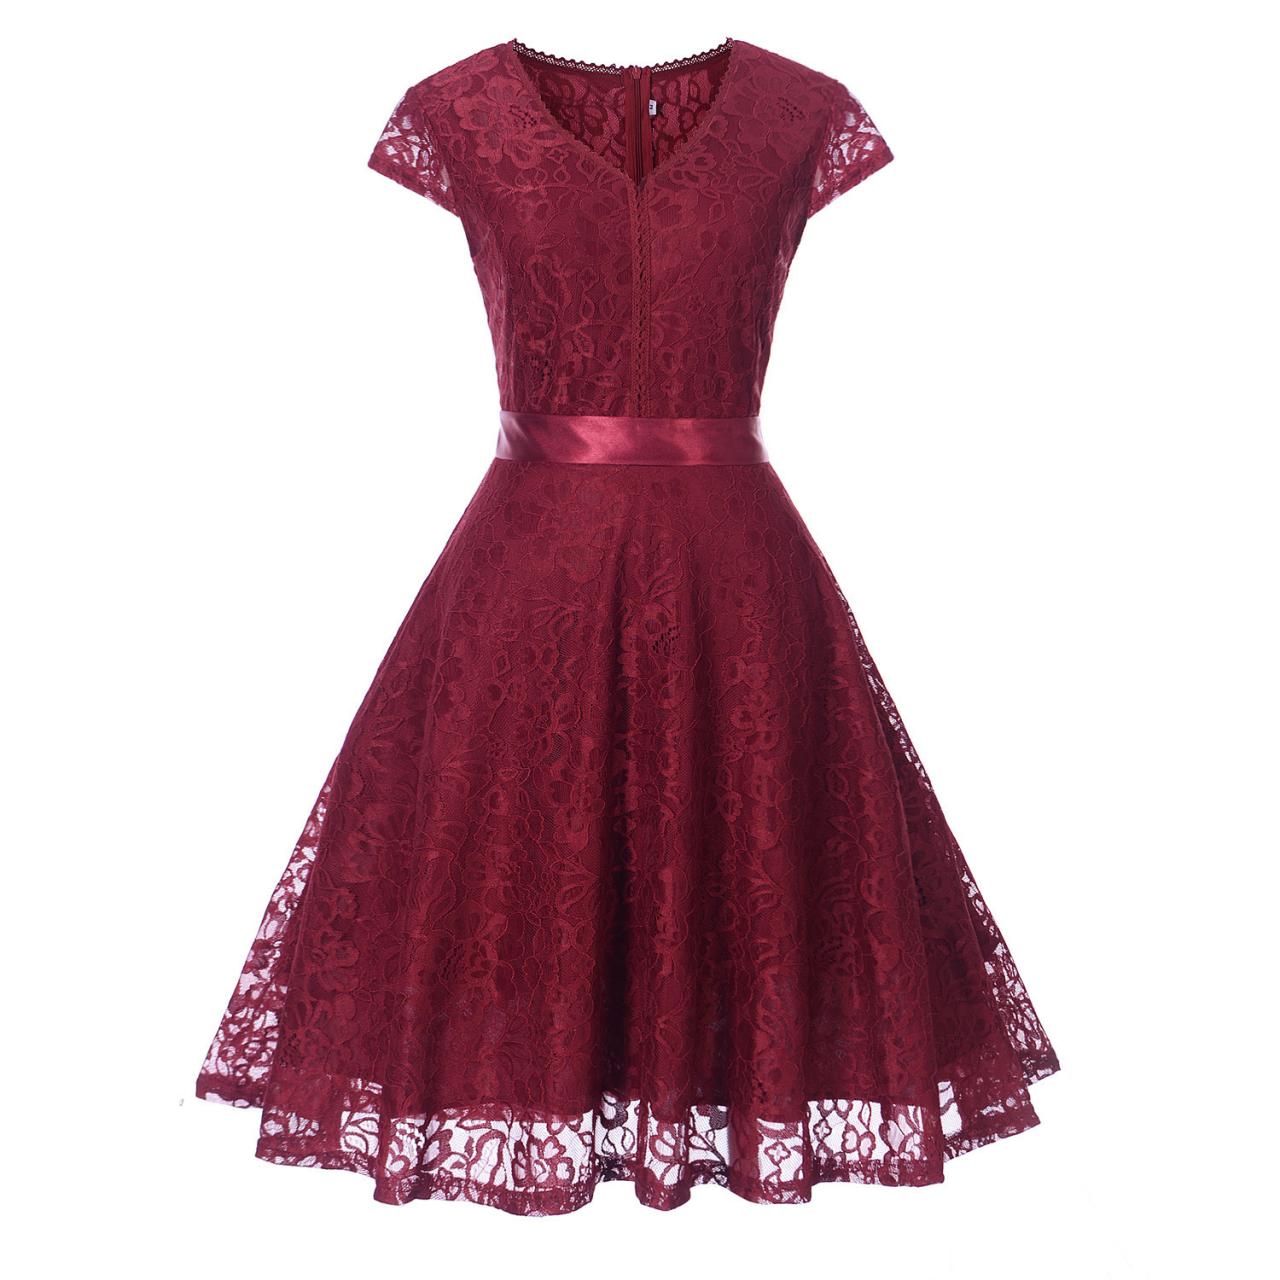 Elegant V Neck Short Sleeve Lace Dress With Belt - Wine Red